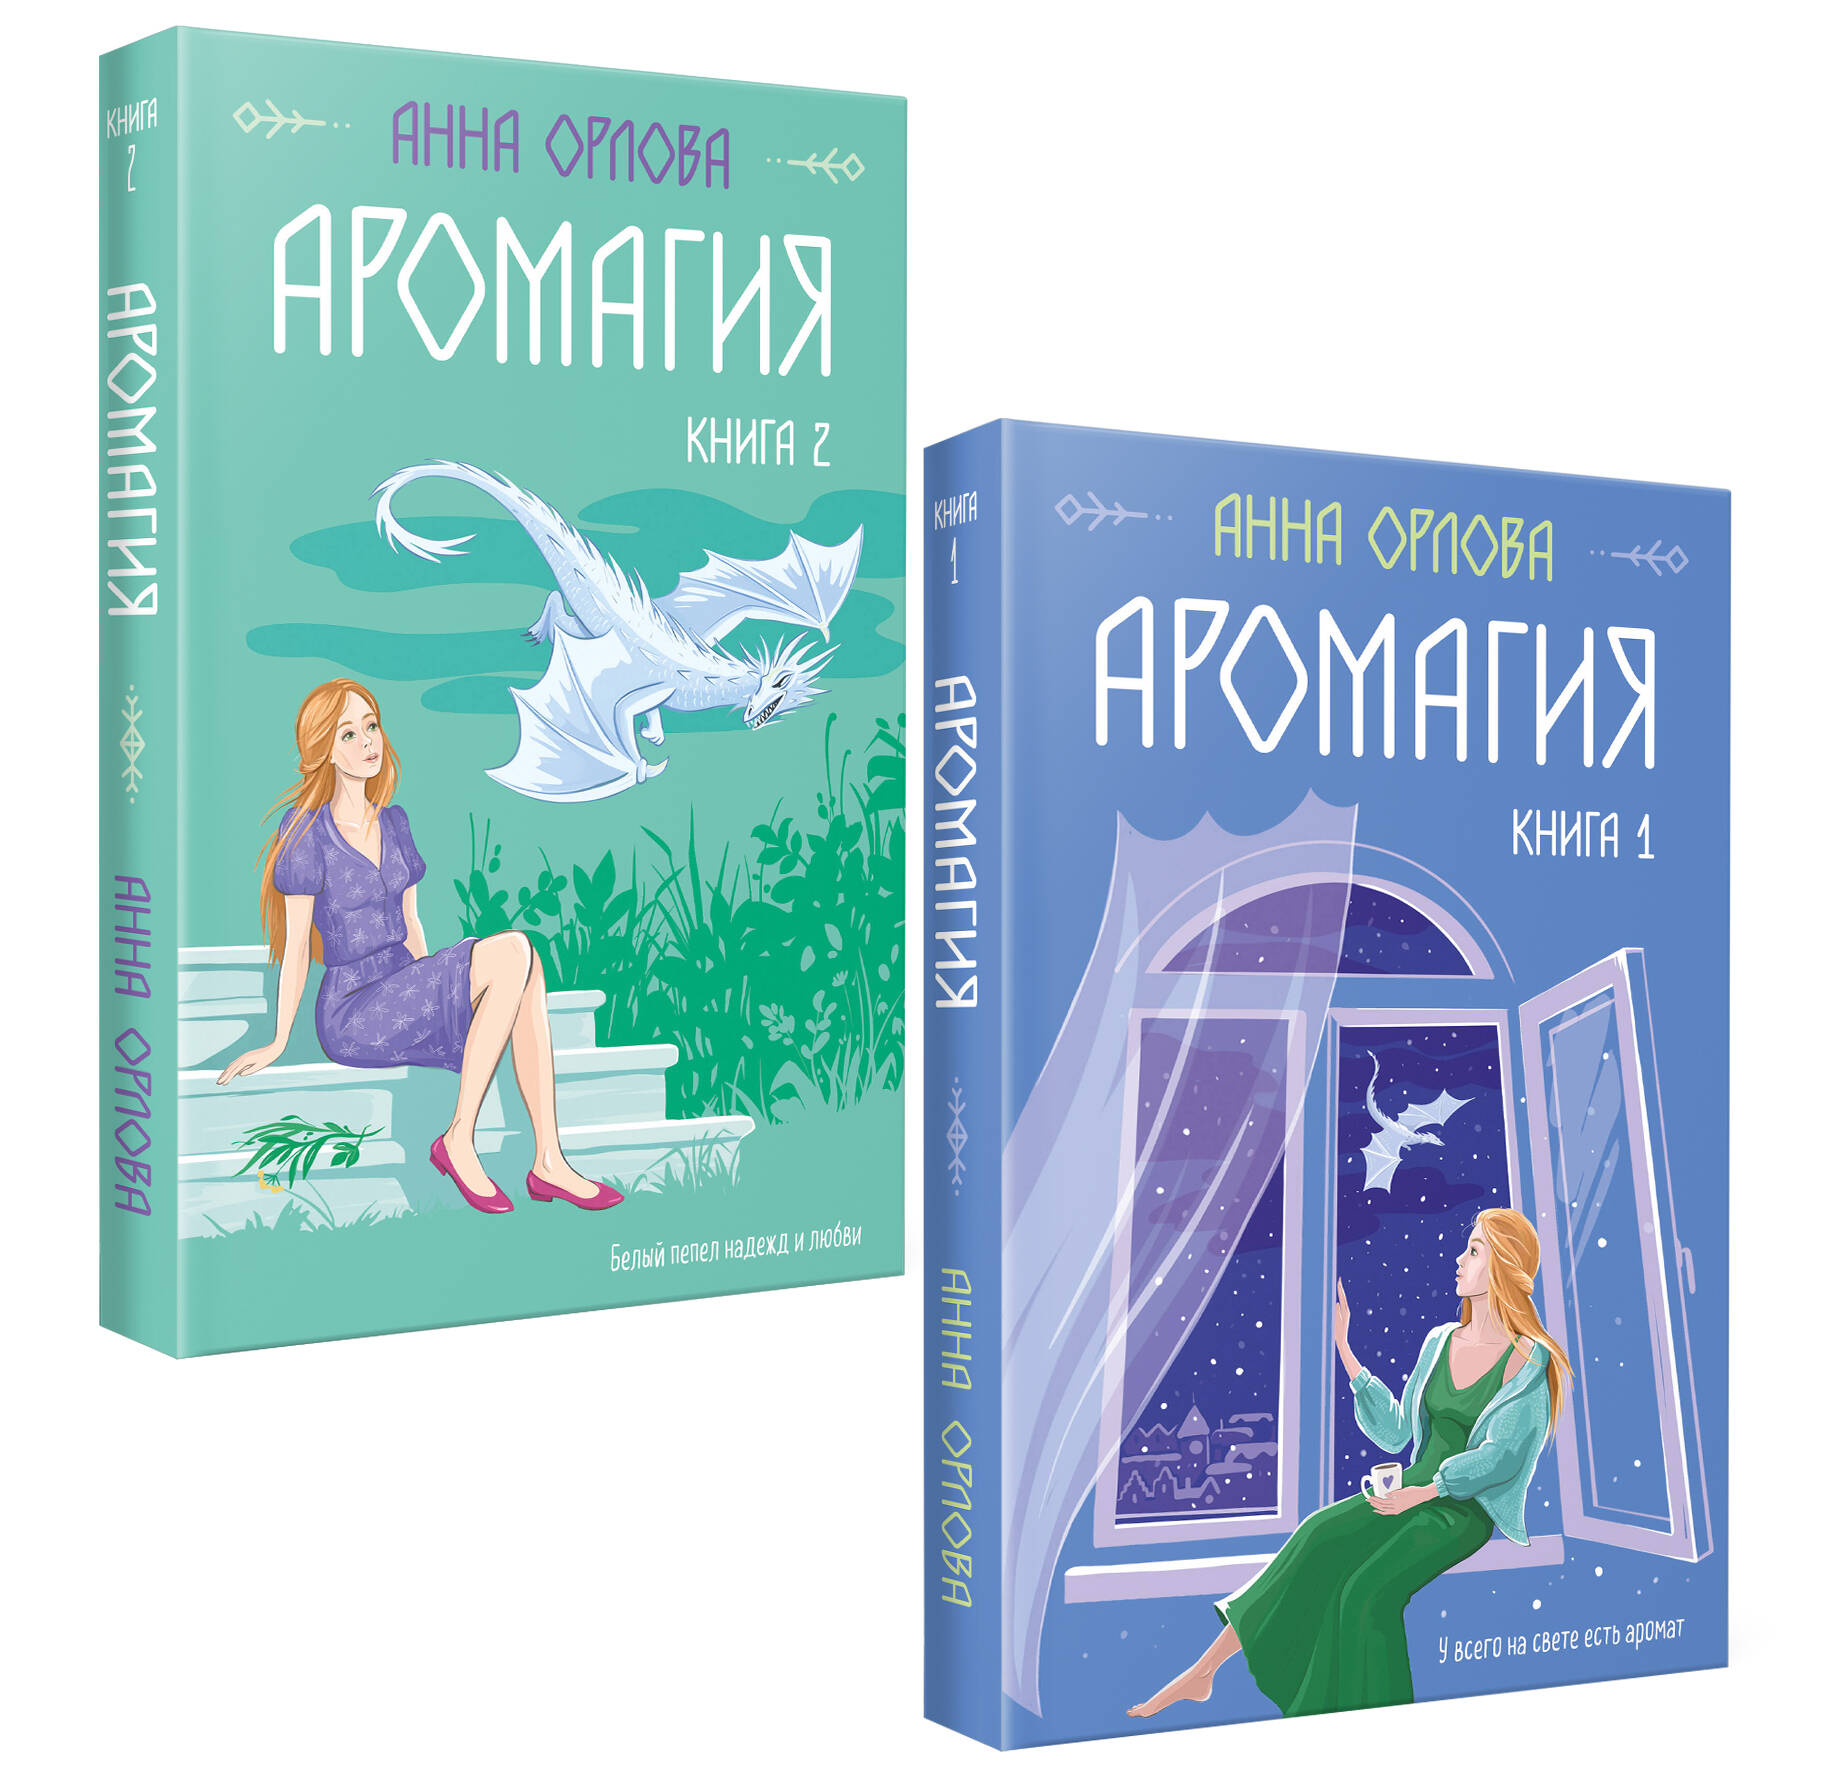 Орлова Анна Аромагия: Книга 1,2 (комплект из двух книг)